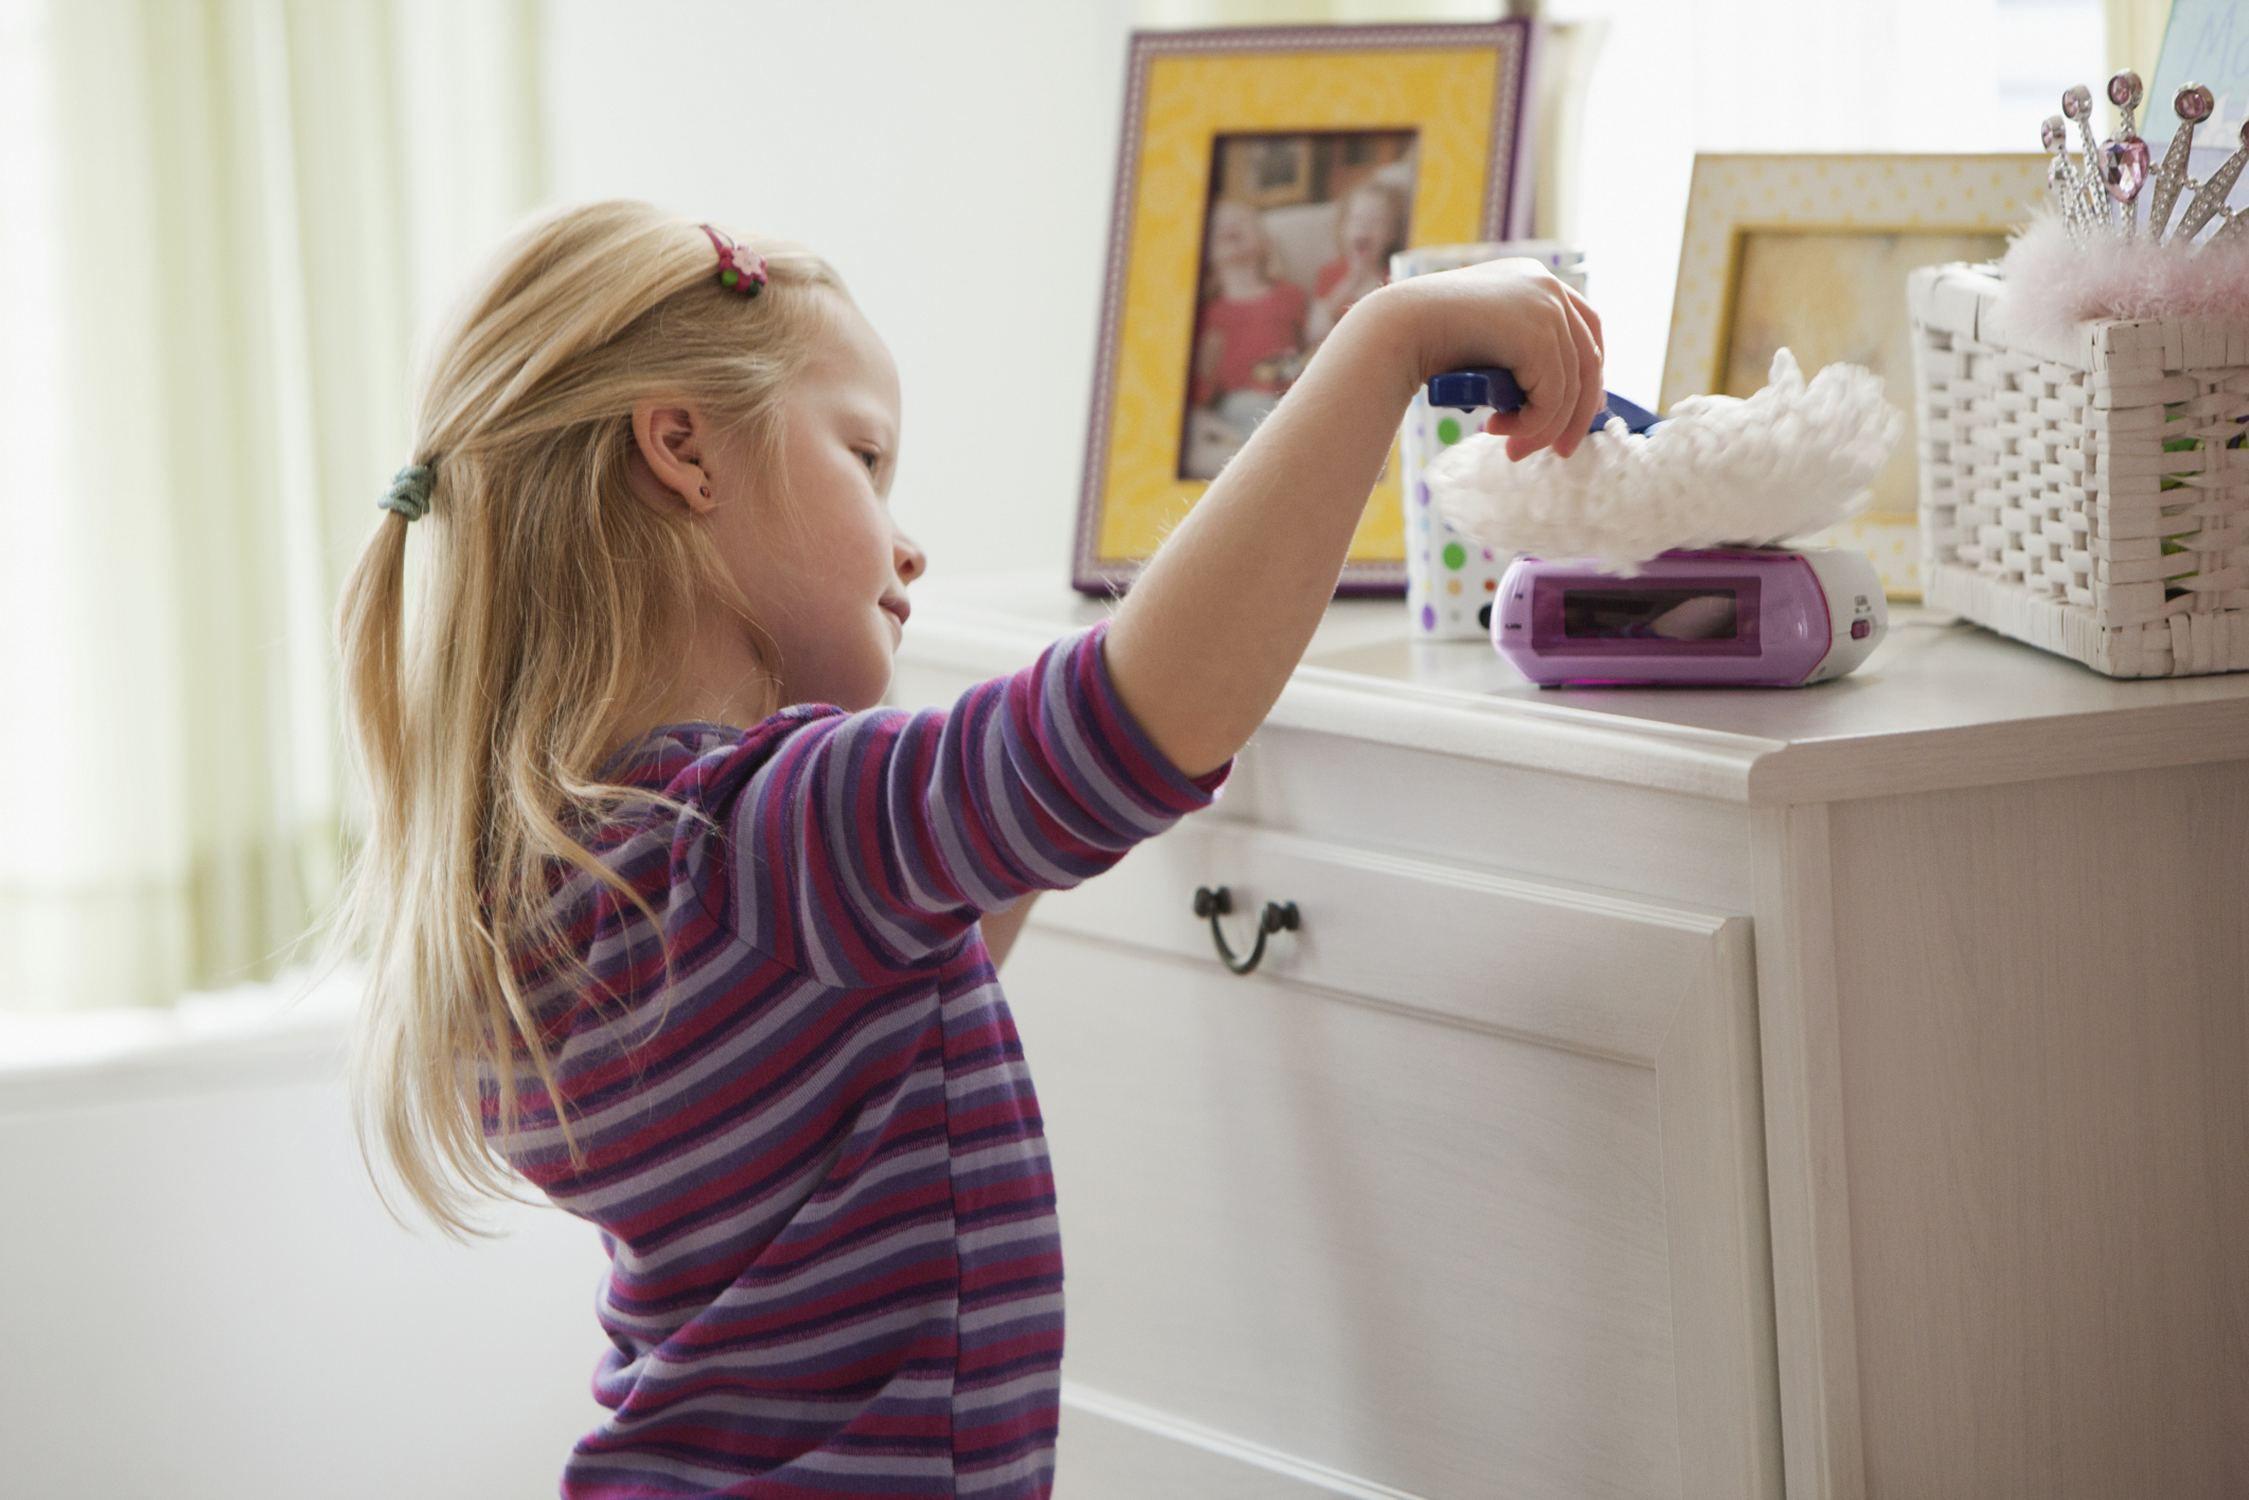 Ce treburi casnice îi poți încredința copilului la diferite vârste?